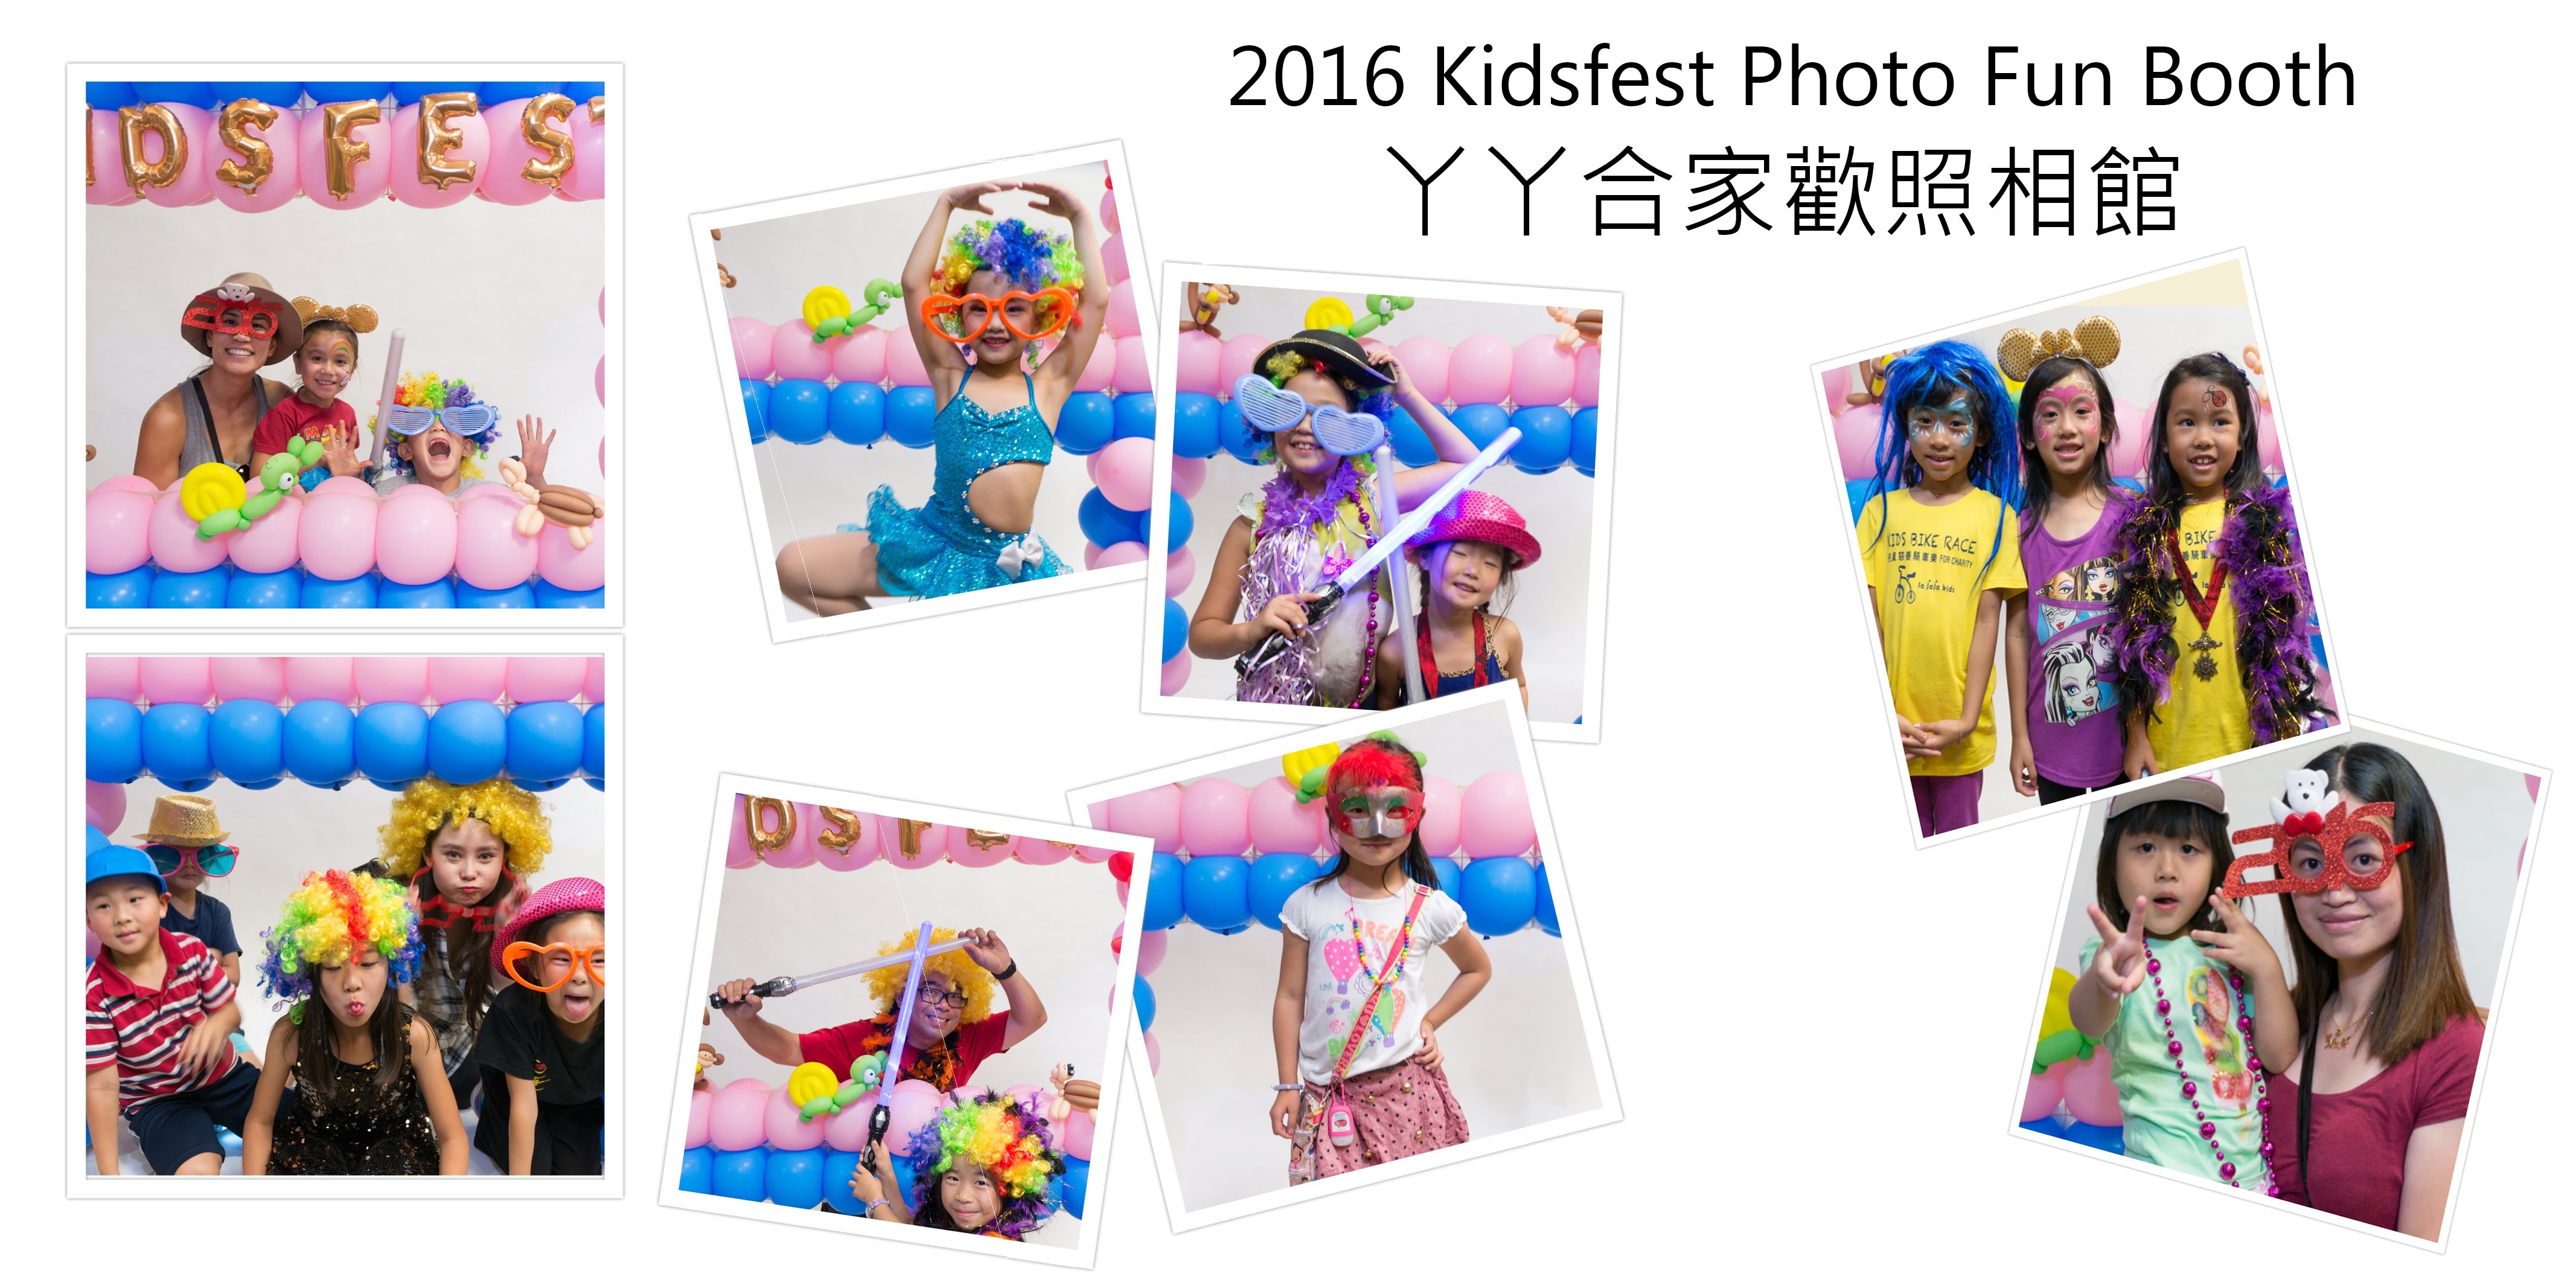 2016-kidsfest-photo-fun-booth